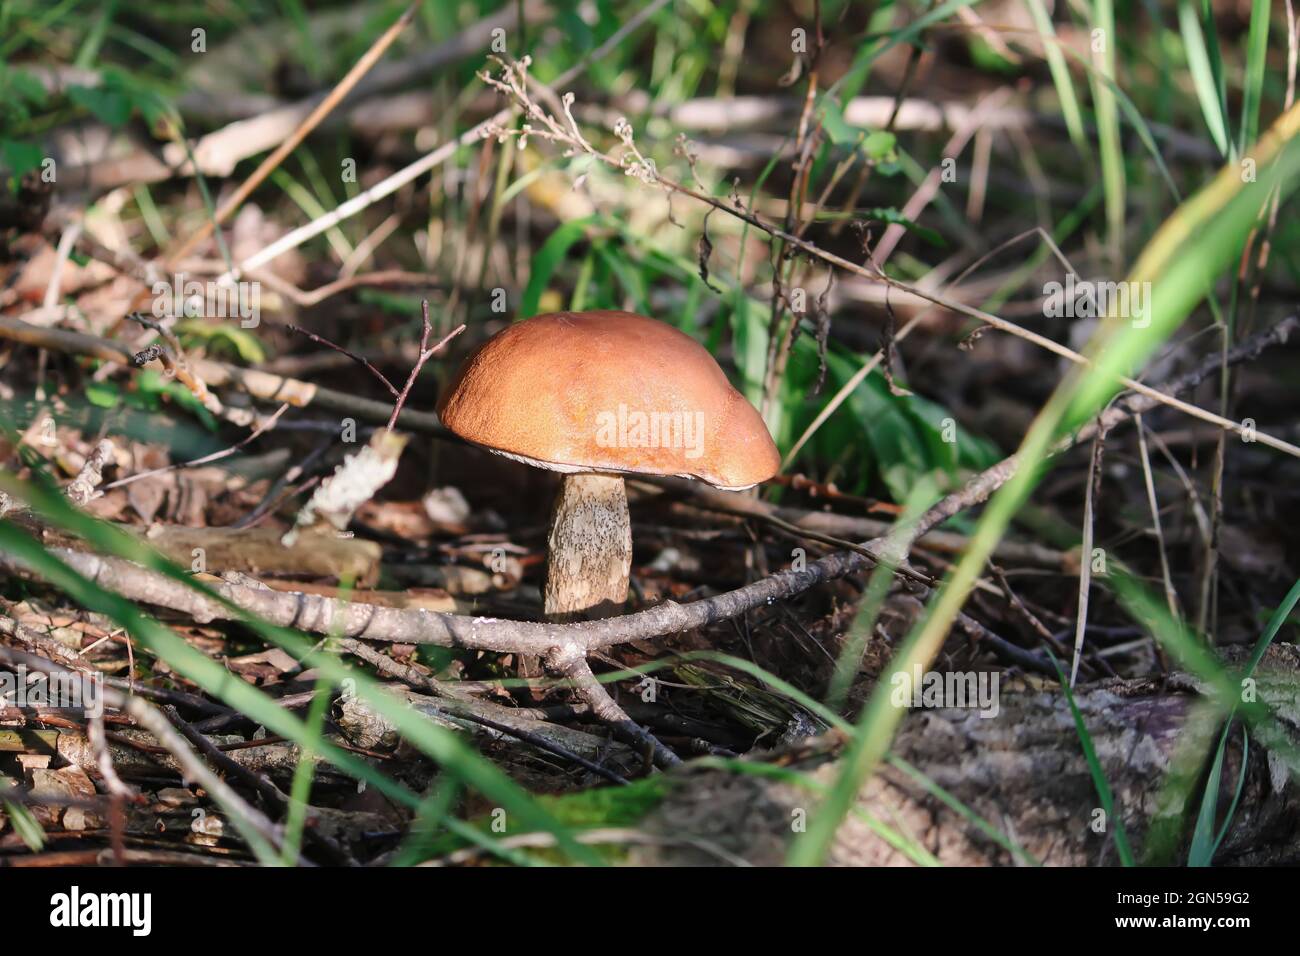 Le champignon de bouleau de la coupe orange pousse dans la forêt sauvage Banque D'Images